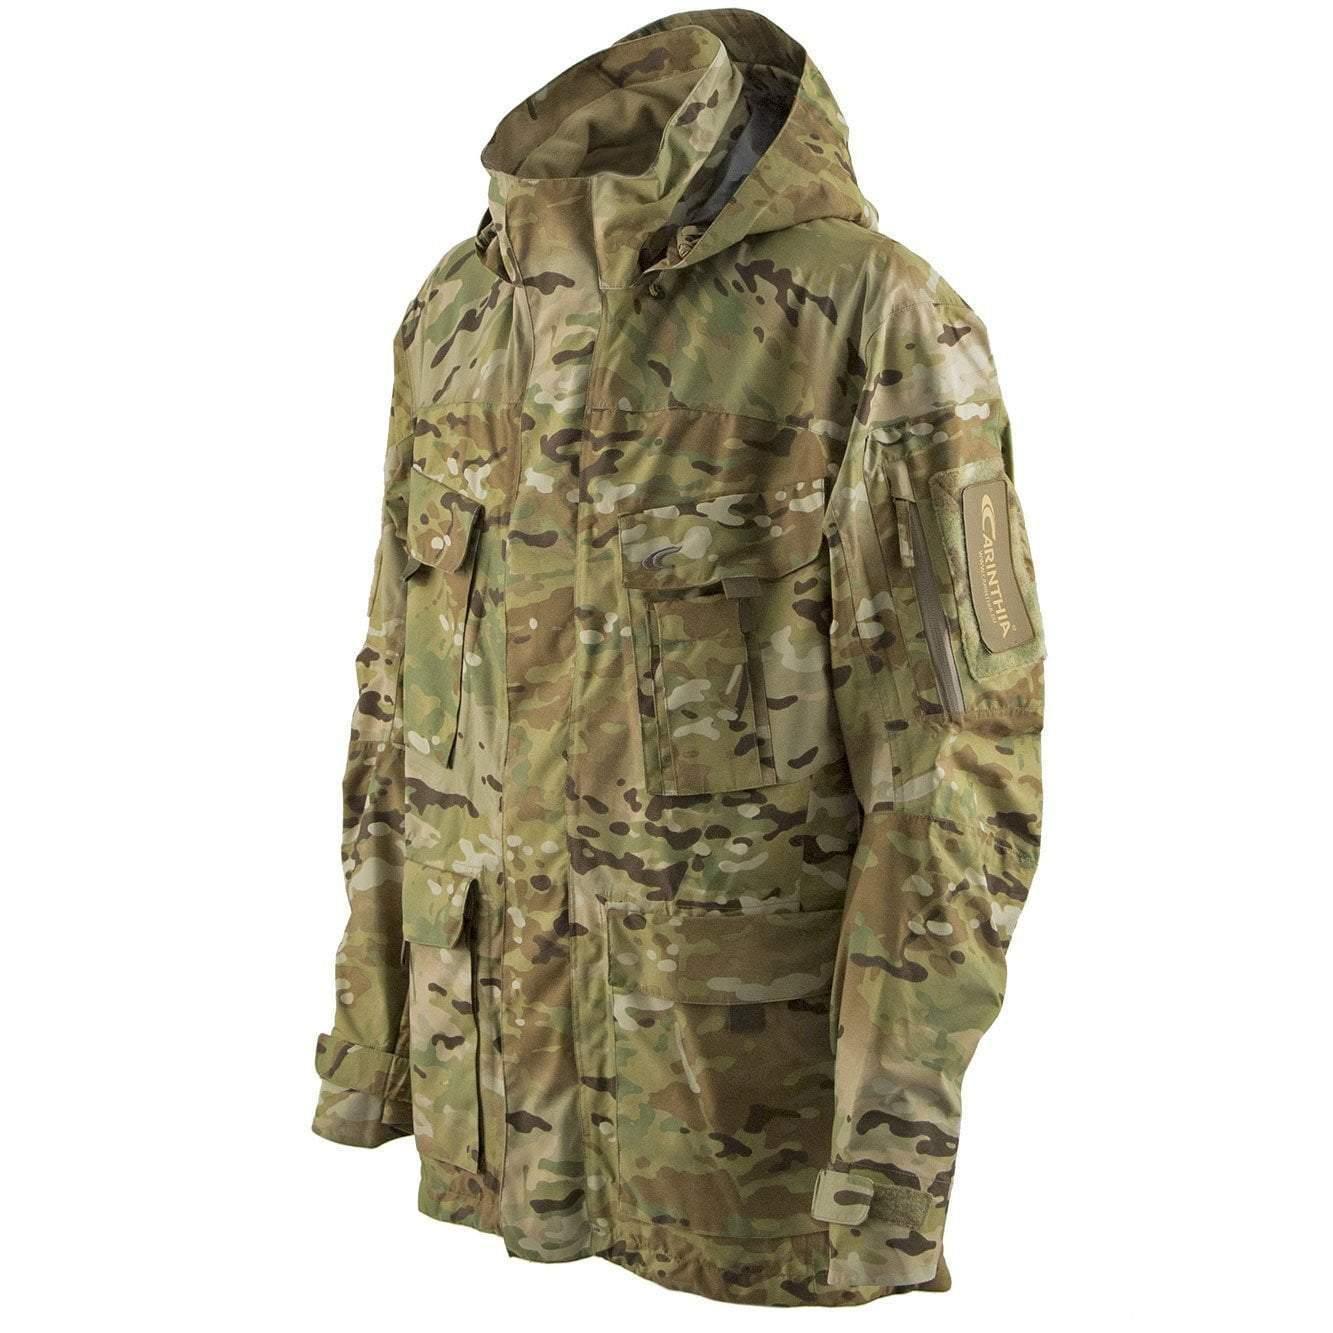 Carinthia TRG Jacket (Jackor & Tröjor) från Carinthia. MultiCamS | TacNGear - Utrustning för polis och militär och outdoor.